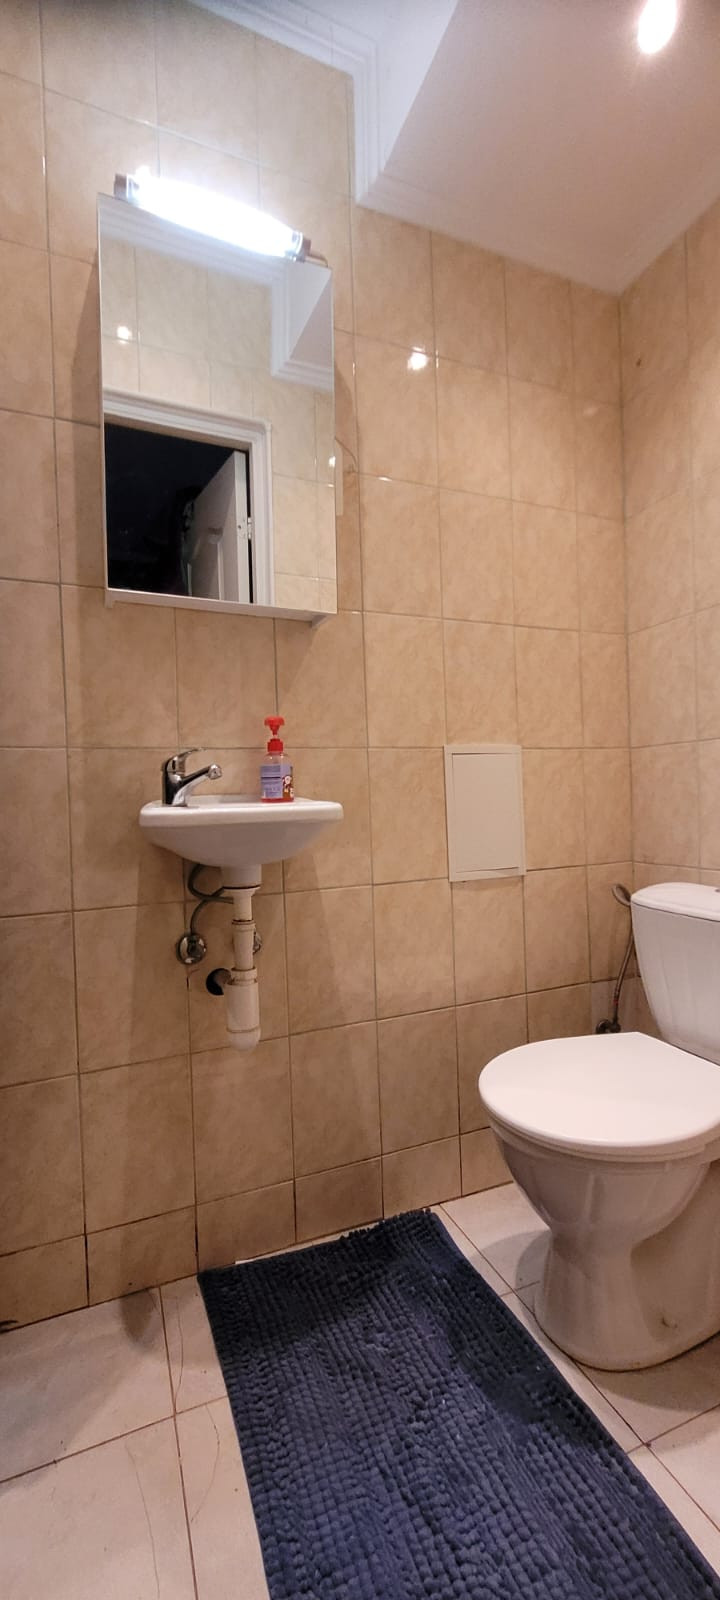 Туалет с небольшой раковиной и зеркалом над ней